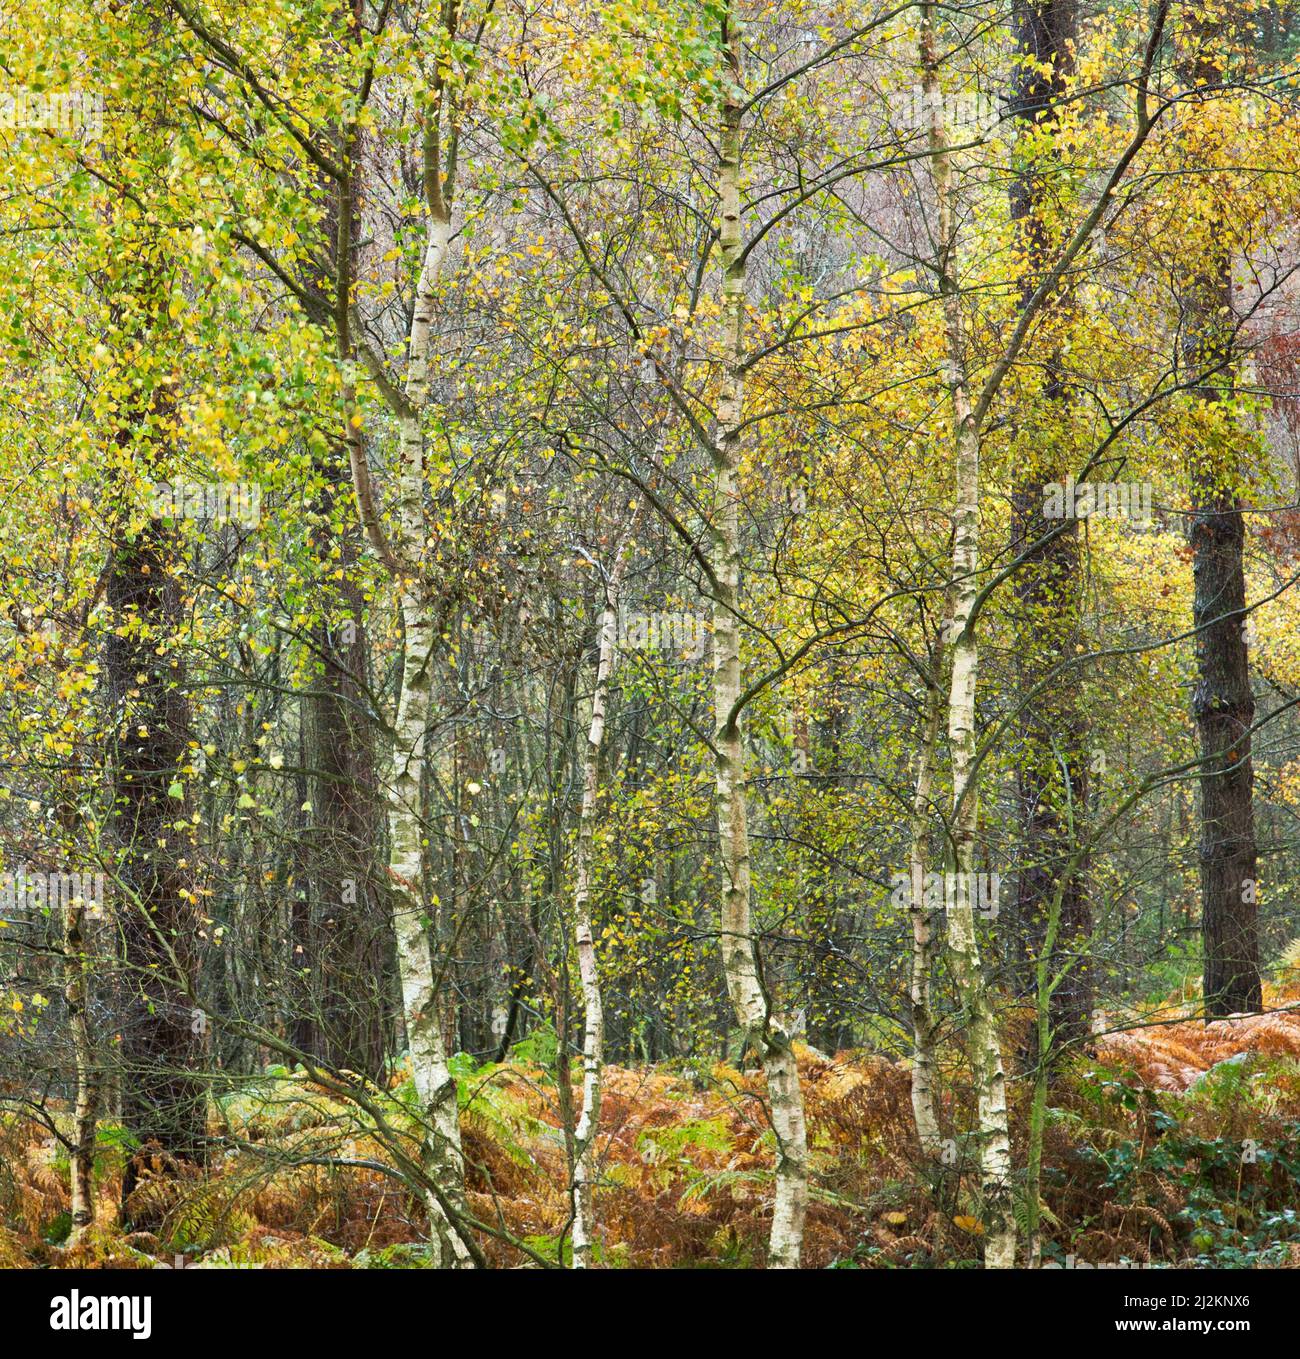 Bouleau argenté à feuilles caduques au bord de la forêt de pins sur Cannock Chase une zone de beauté naturelle exceptionnelle Staffordshire Angleterre Banque D'Images